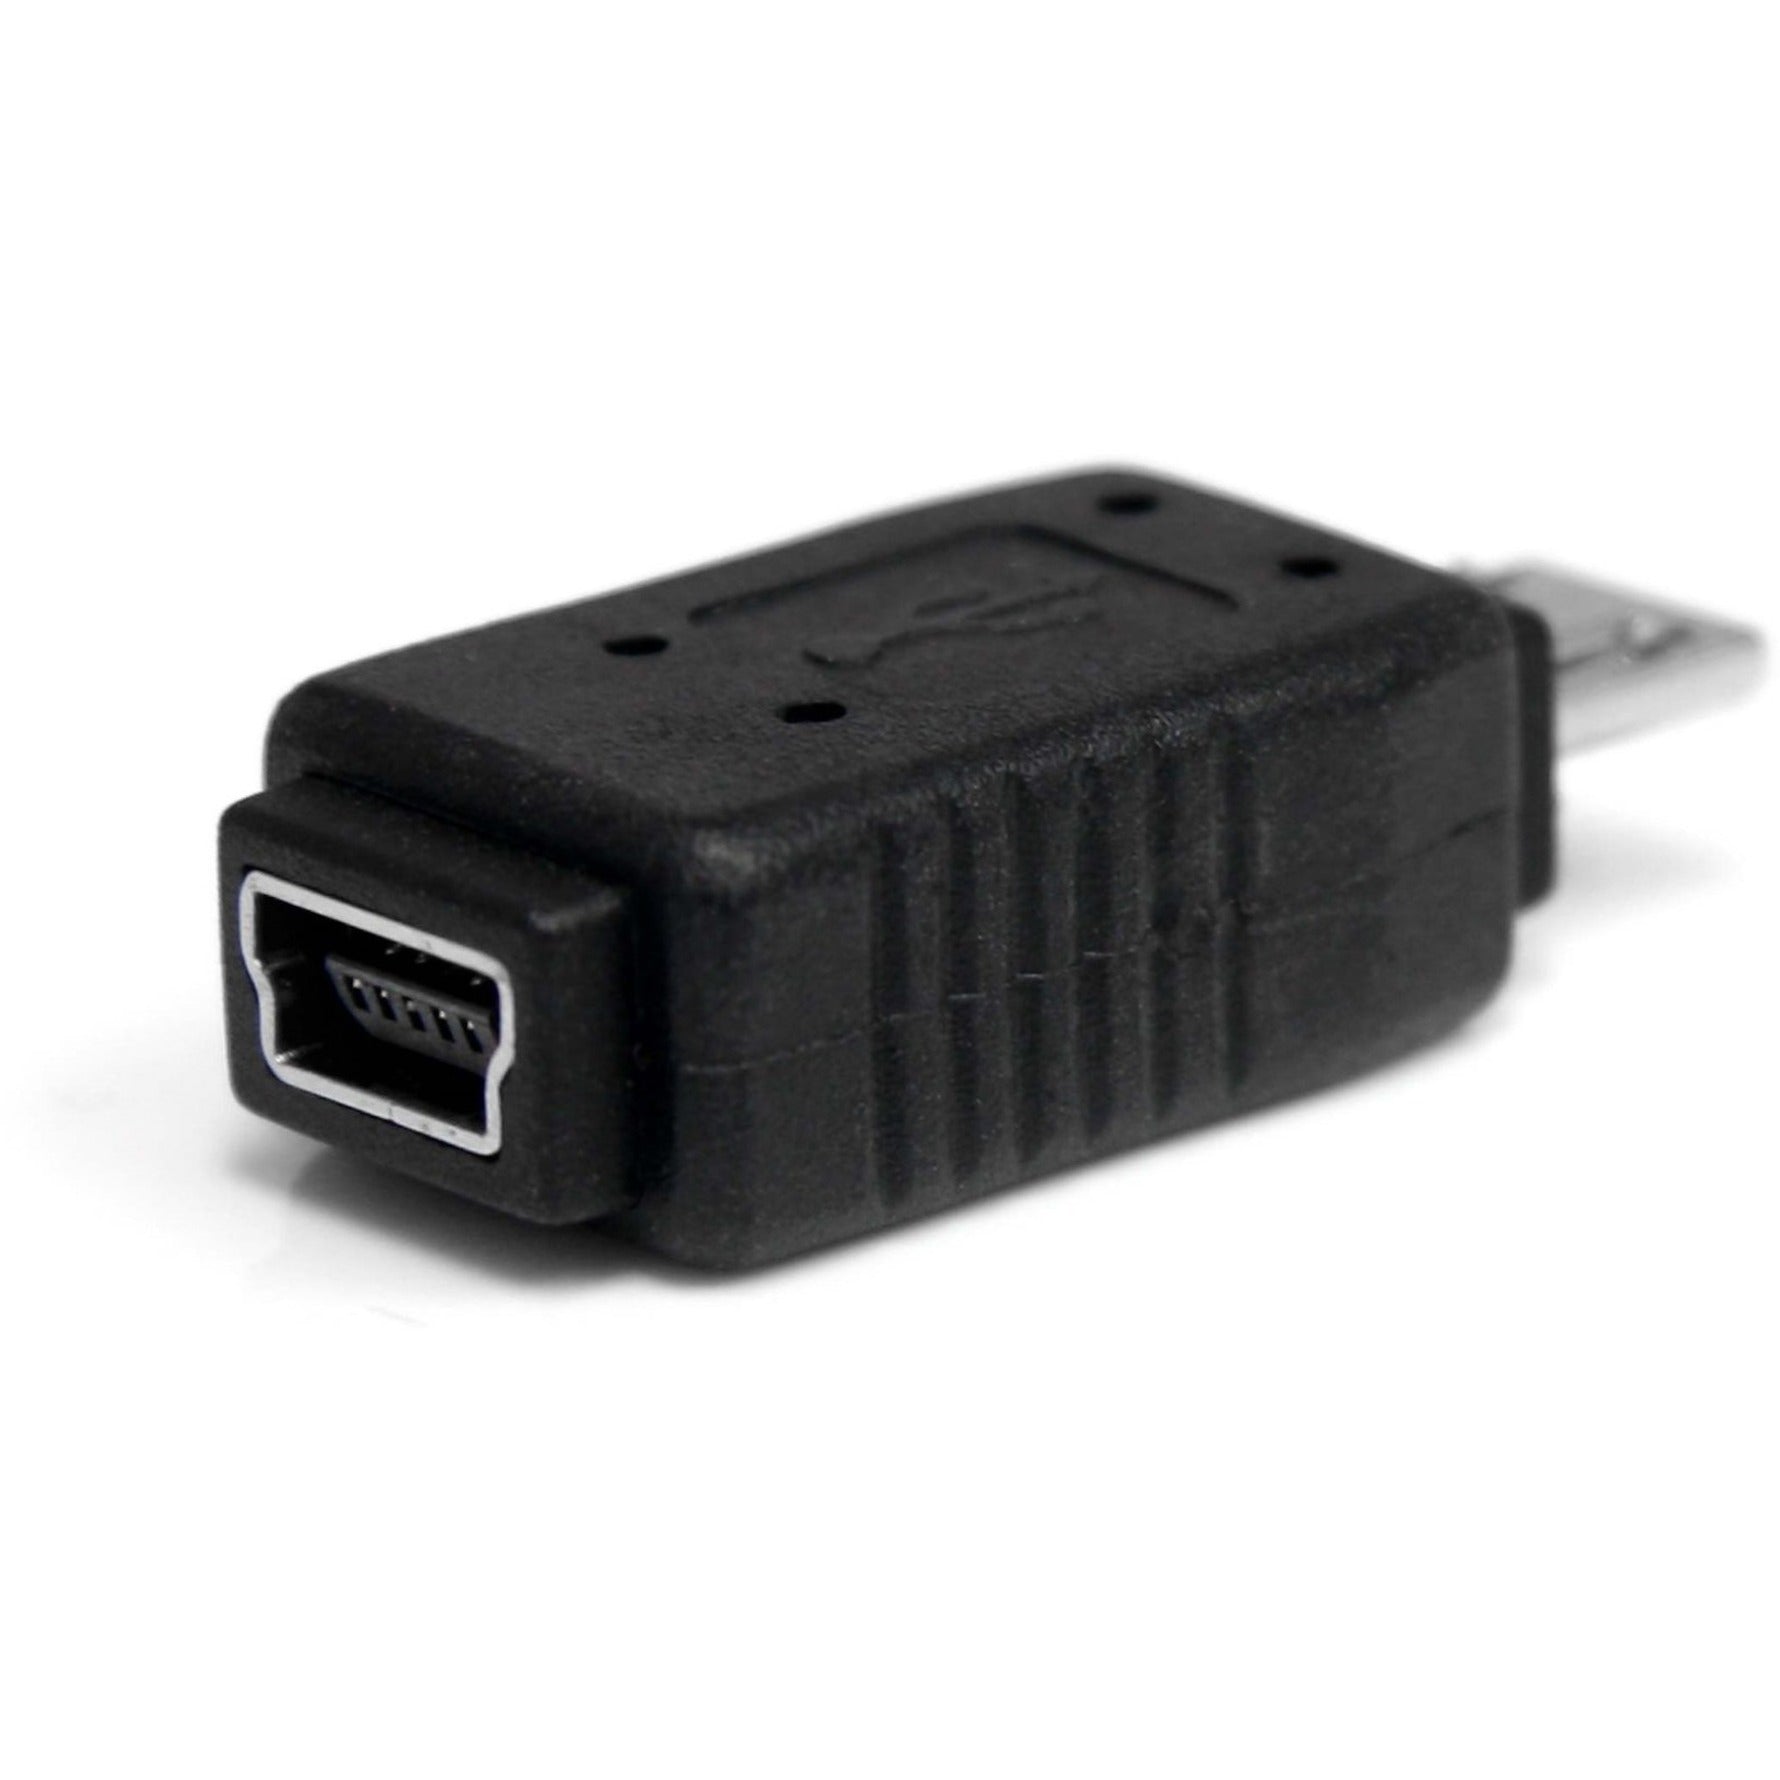 StarTech.com UUSBMUSBMF USB 2.0 Adapter - Micro USB (M) - Mini USB (F), Charging Support [Discontinued]